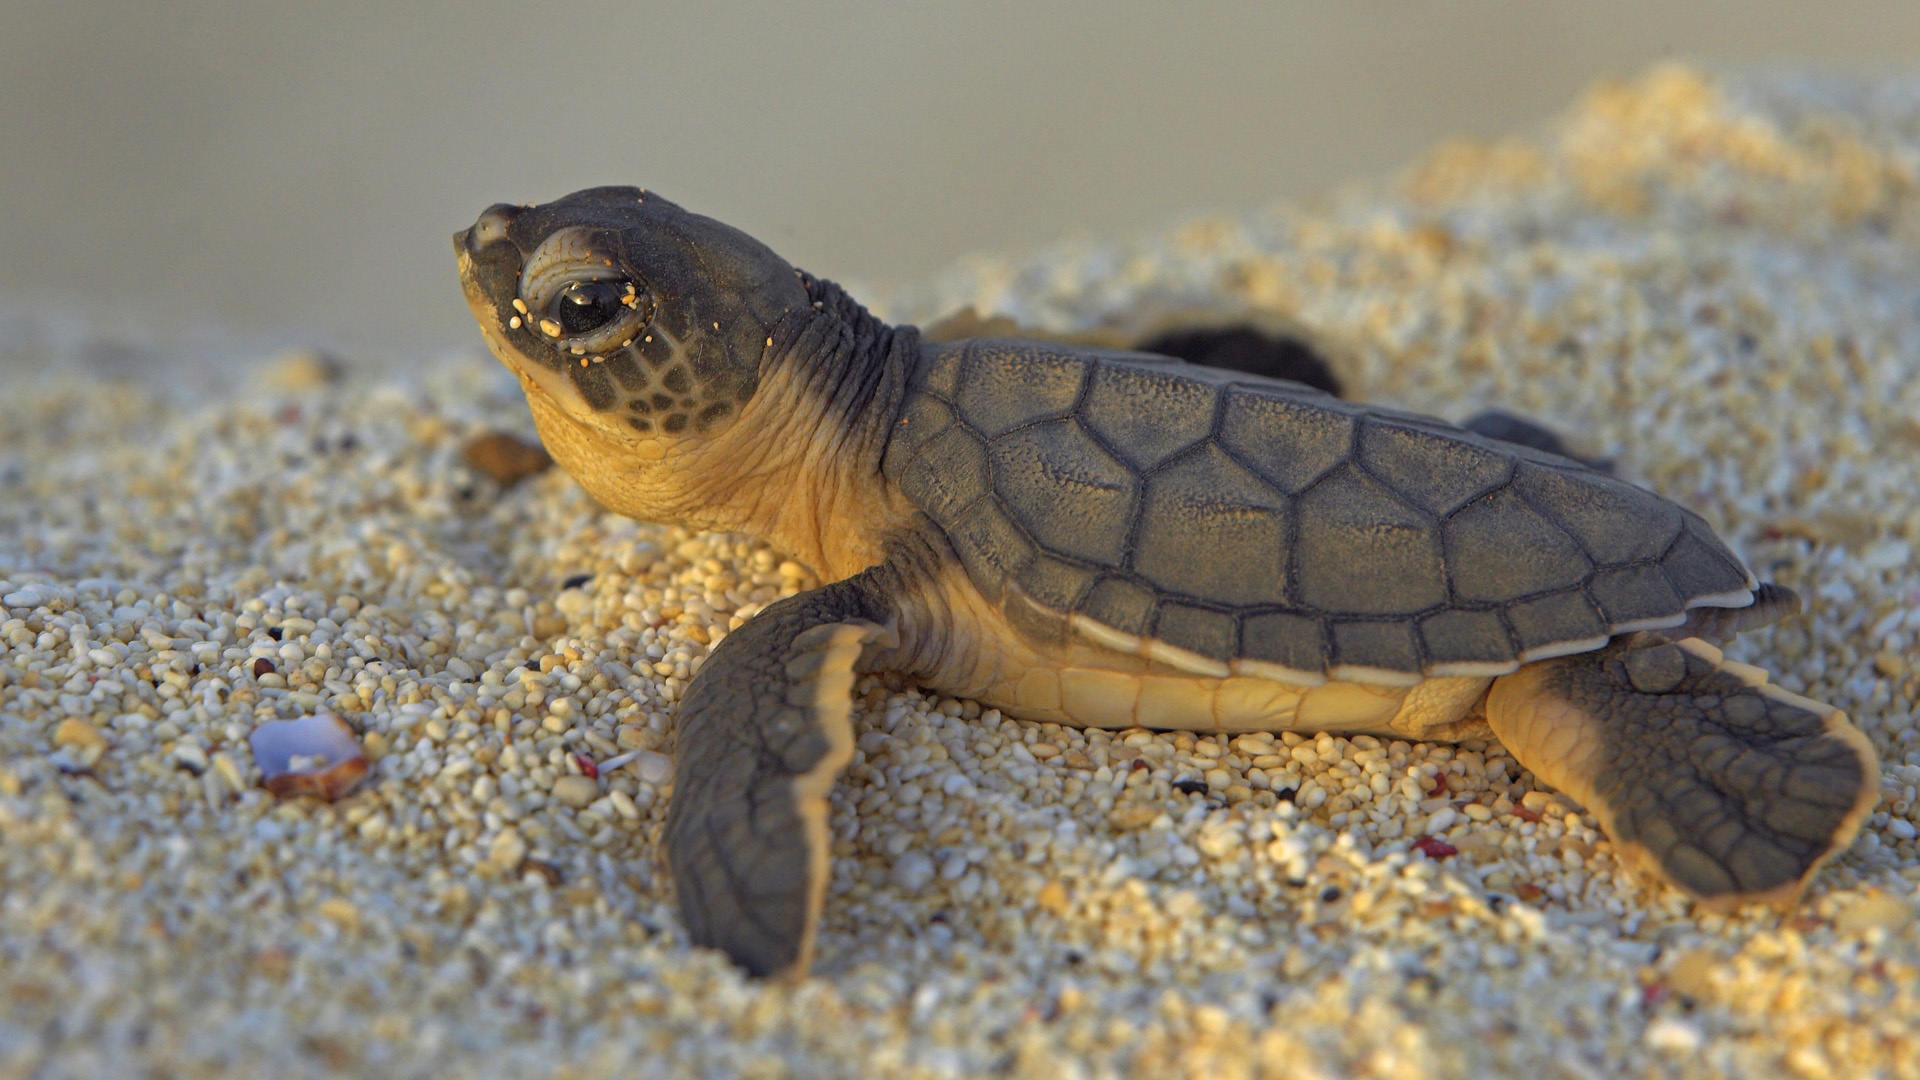 X Kb Jpeg Cute Baby Sea Turtles Desktop Wallpaper